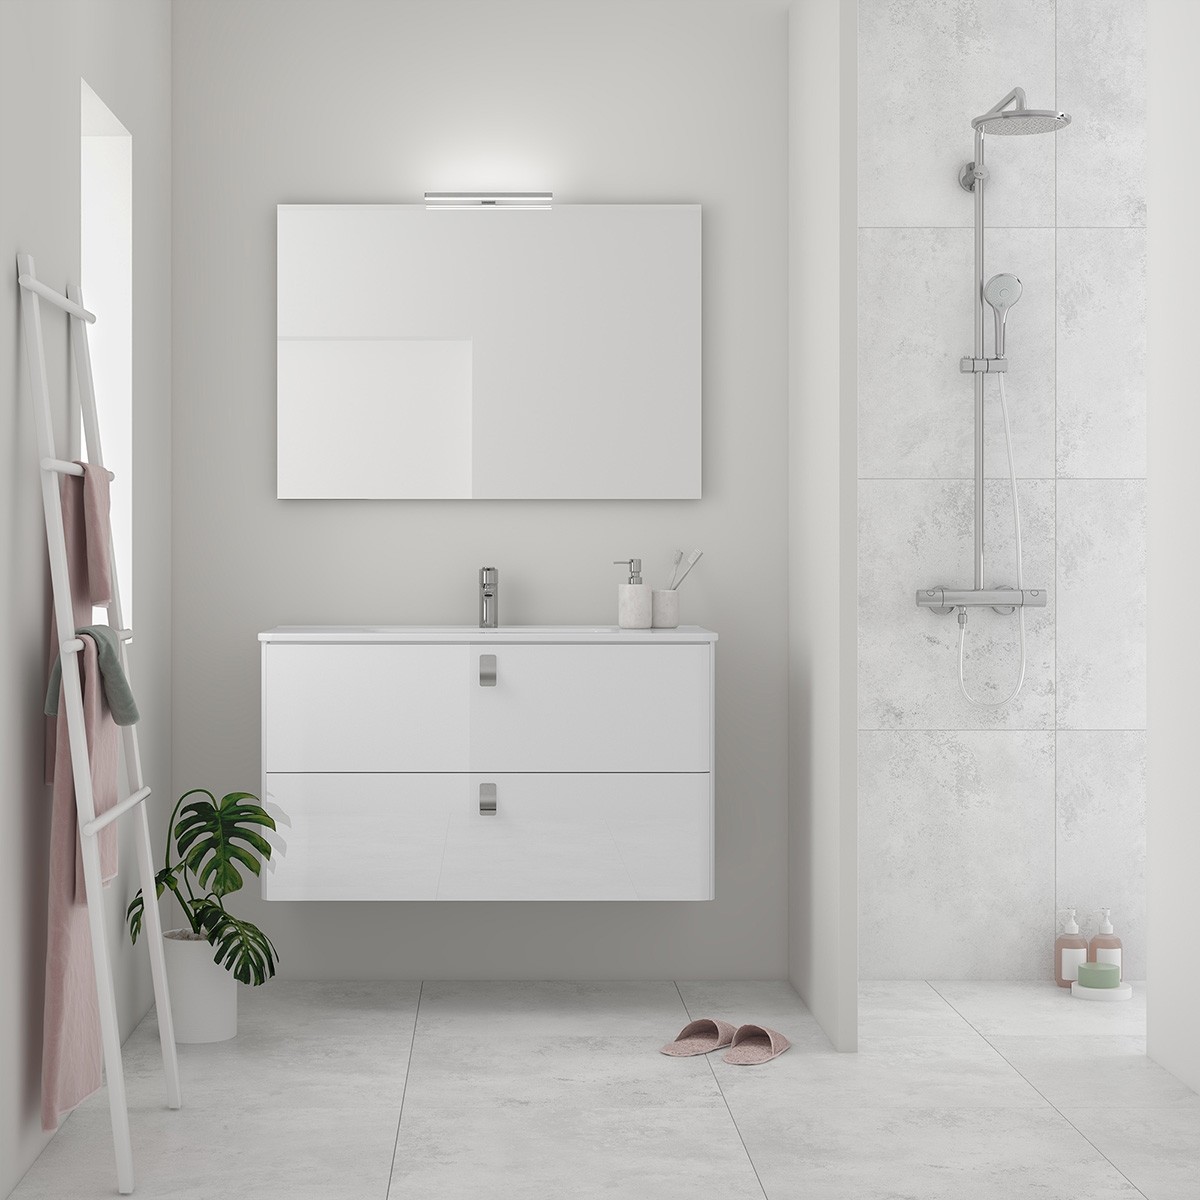 Bathroom Remodel - Bathroom Vanity